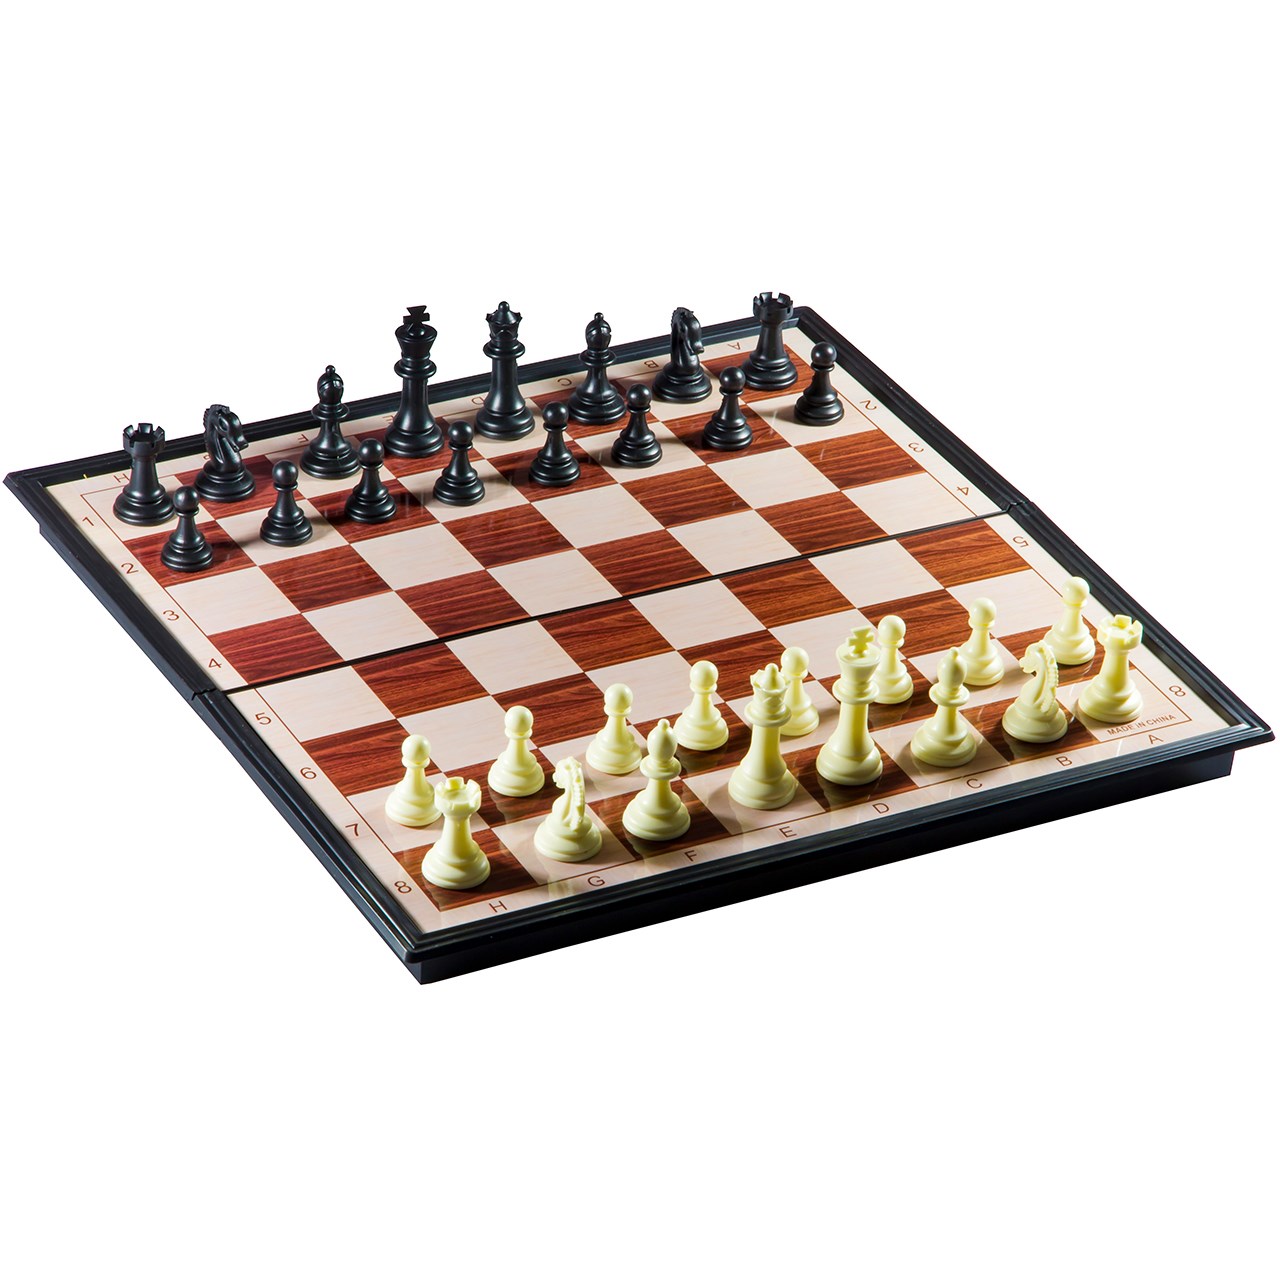 شطرنج آهنربایی آیو چینگ برینز چس مدل No.8708